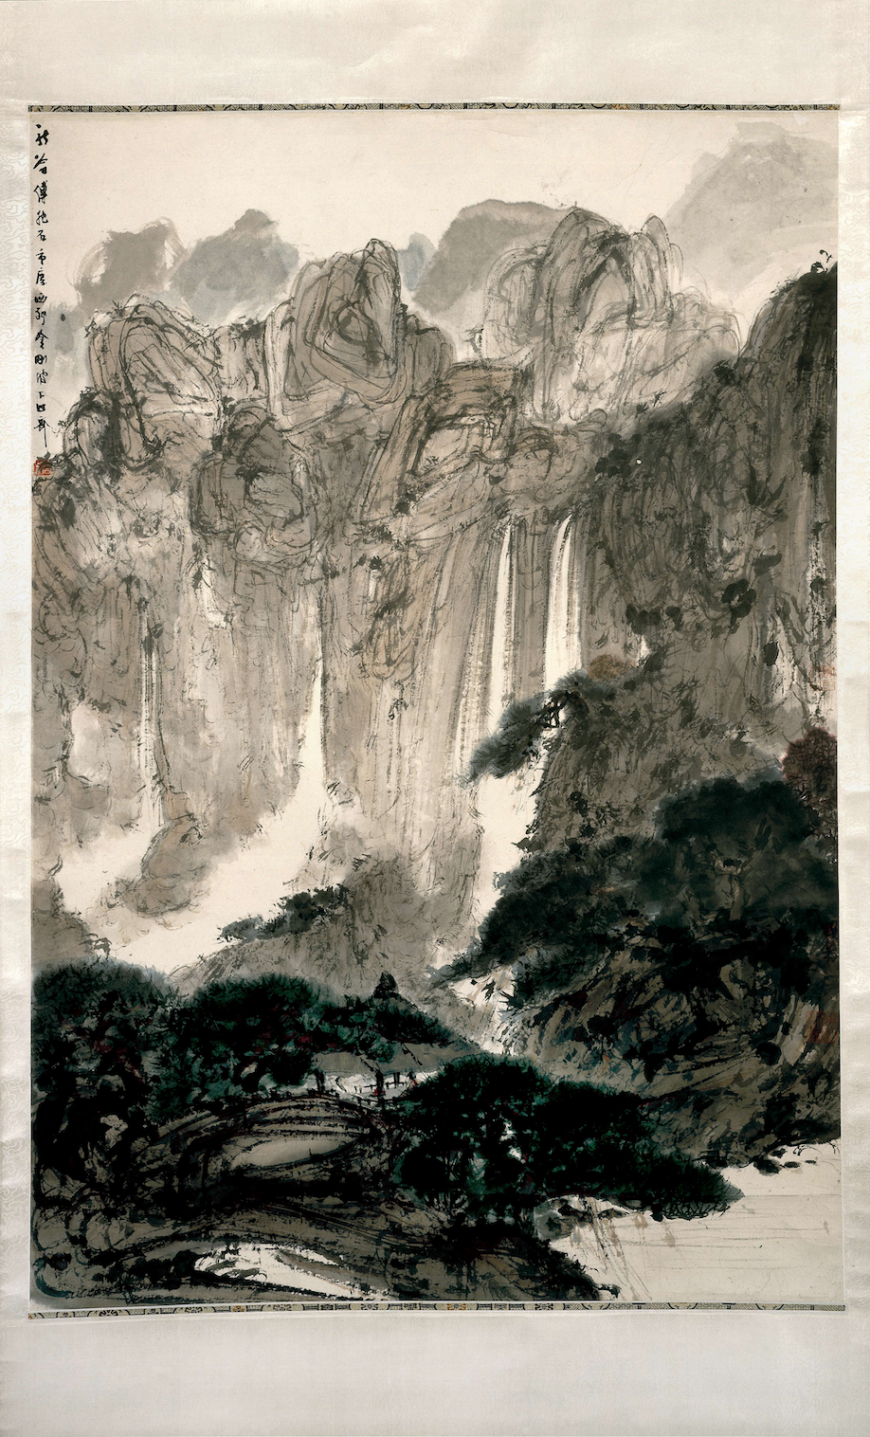 Fu Baoshi, Diamond Cliffs, 1939–46?, Jingangpo, painting, hanging scroll, 117 x 79 cm, Chongqing, China (© Trustees of the British Museum)